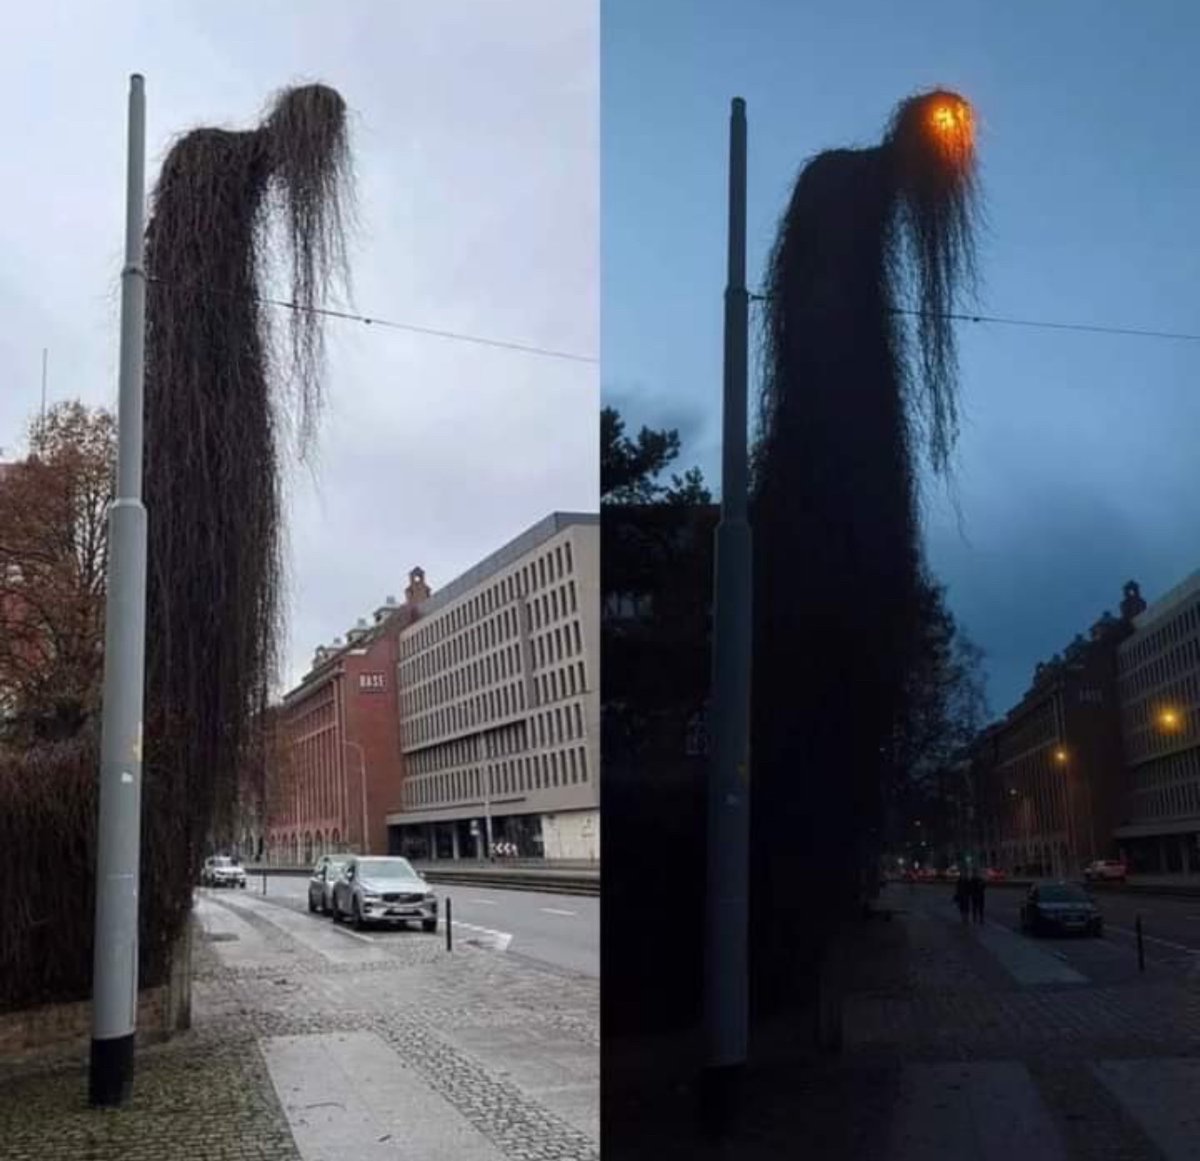 An overgrown light pole in Poland